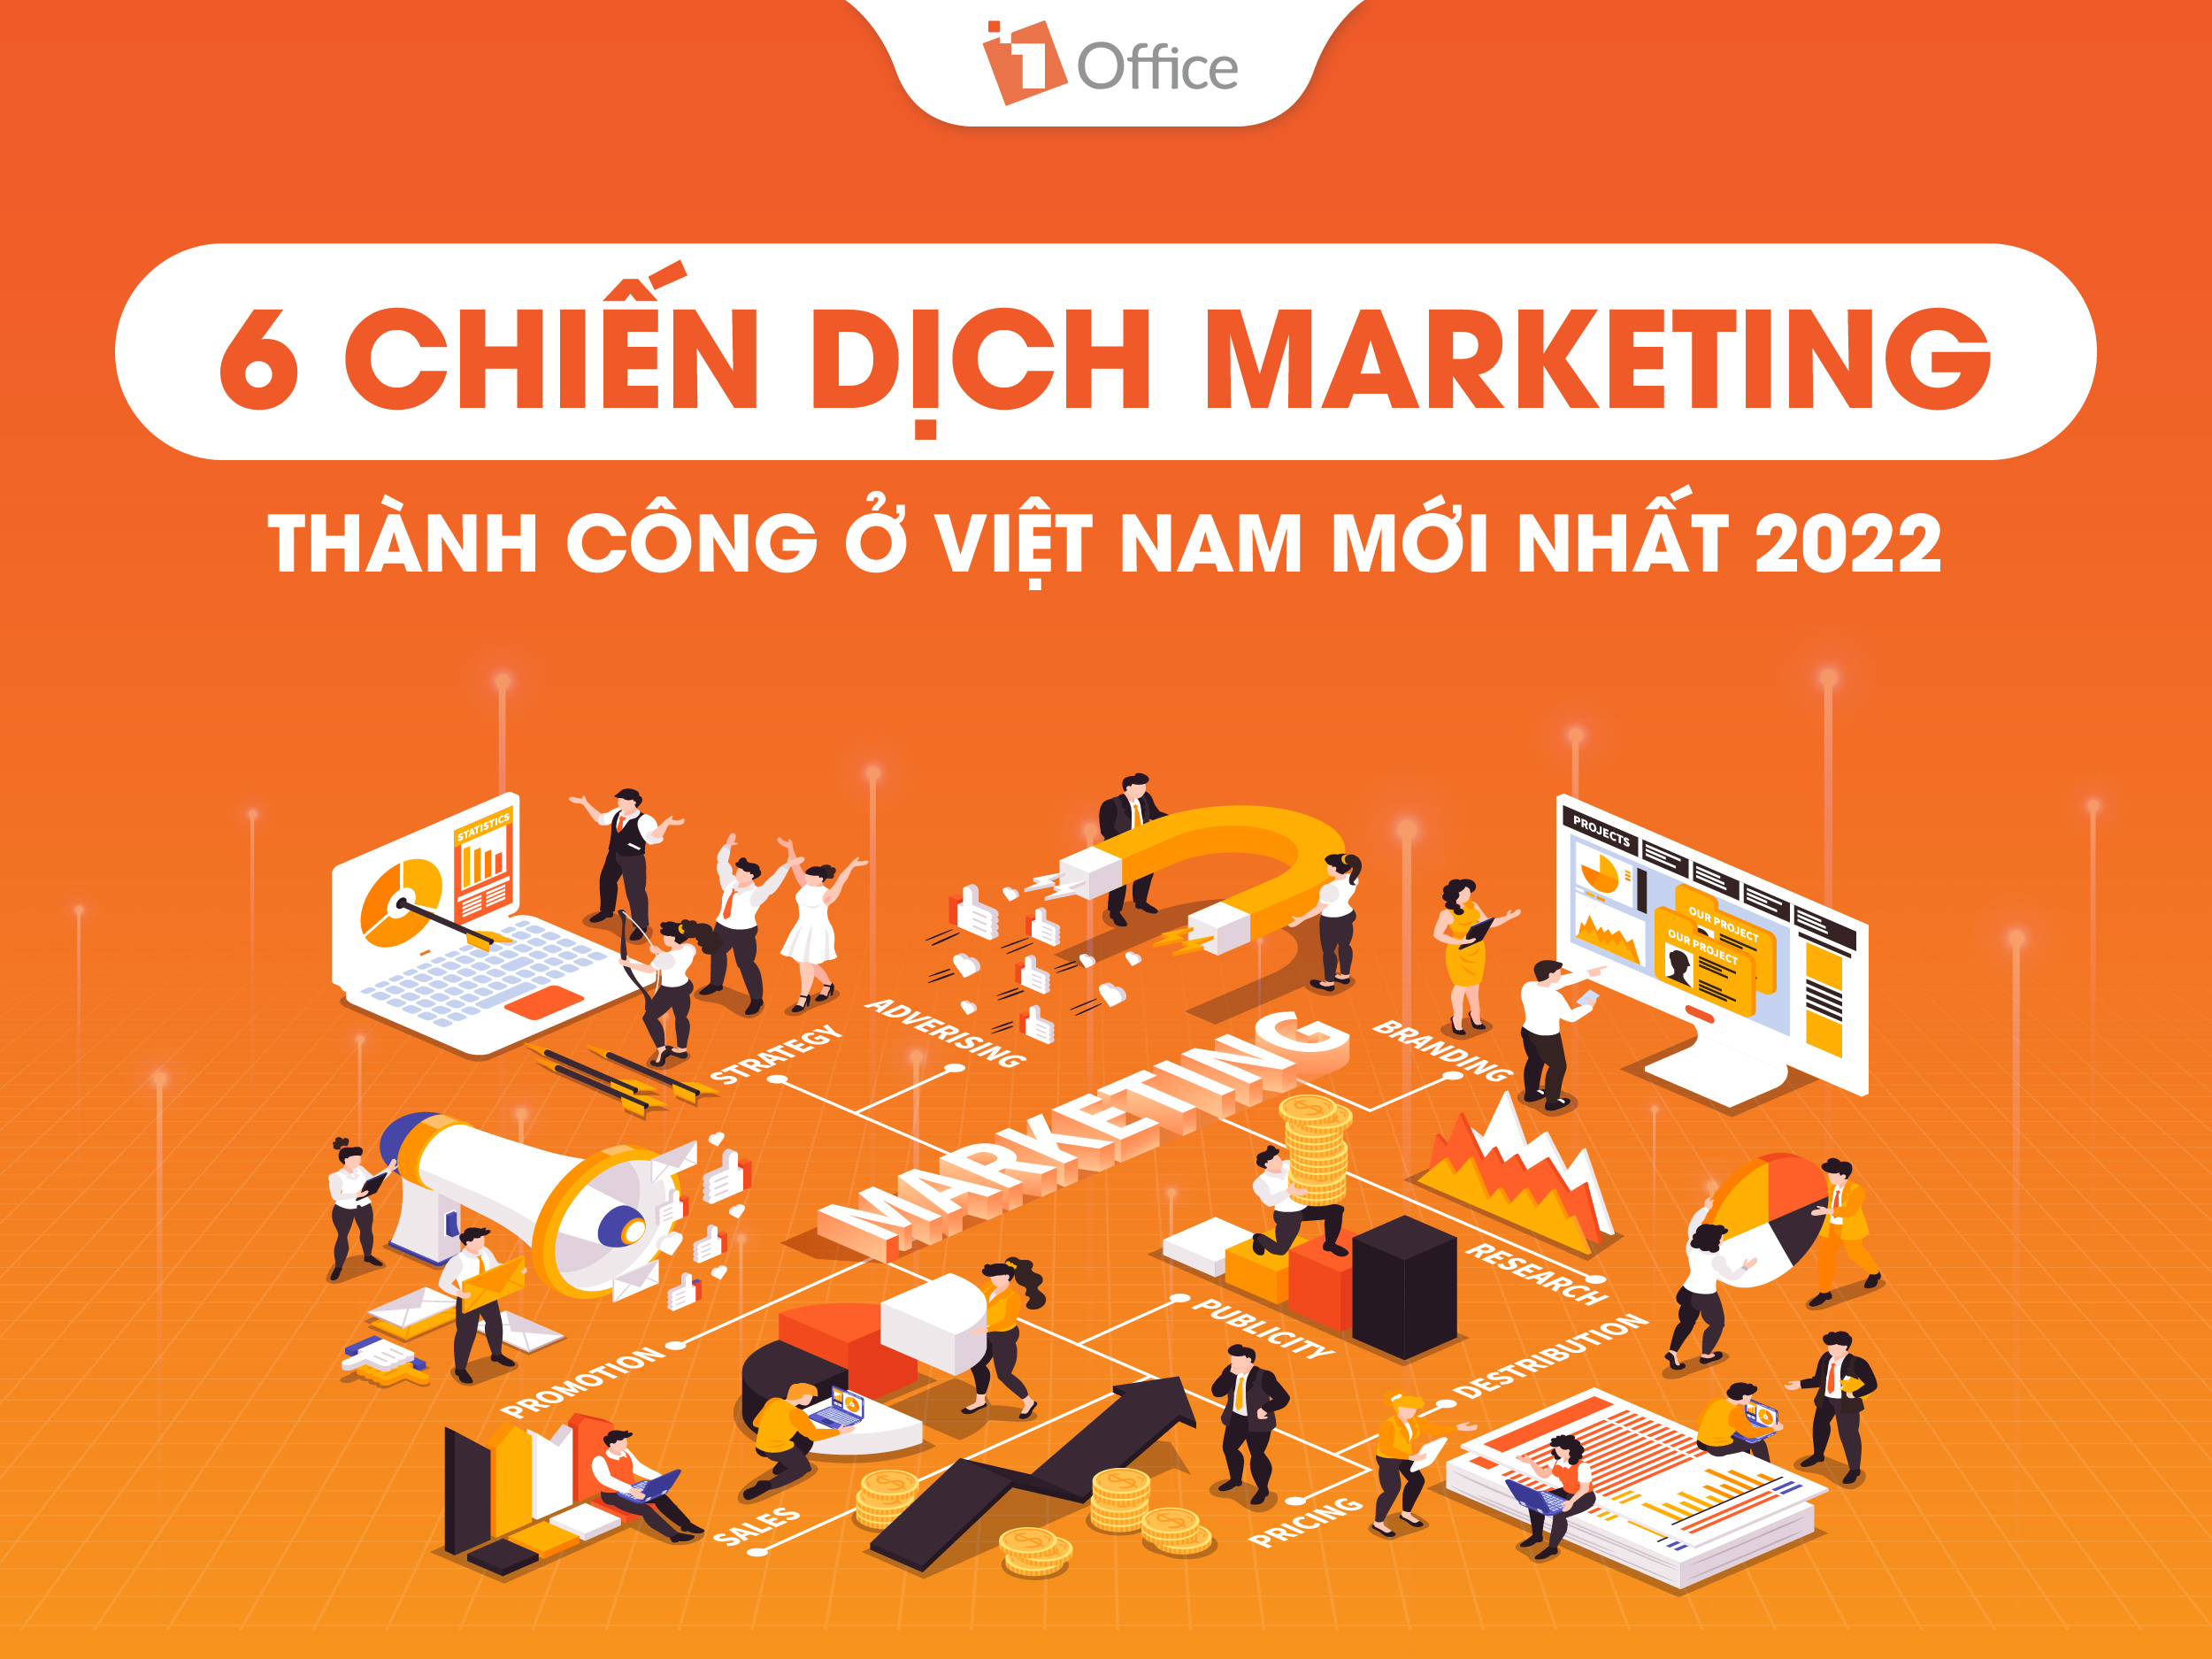 Case study: 6 chiến dịch Marketing thành công ở Việt Nam mới nhất 2022